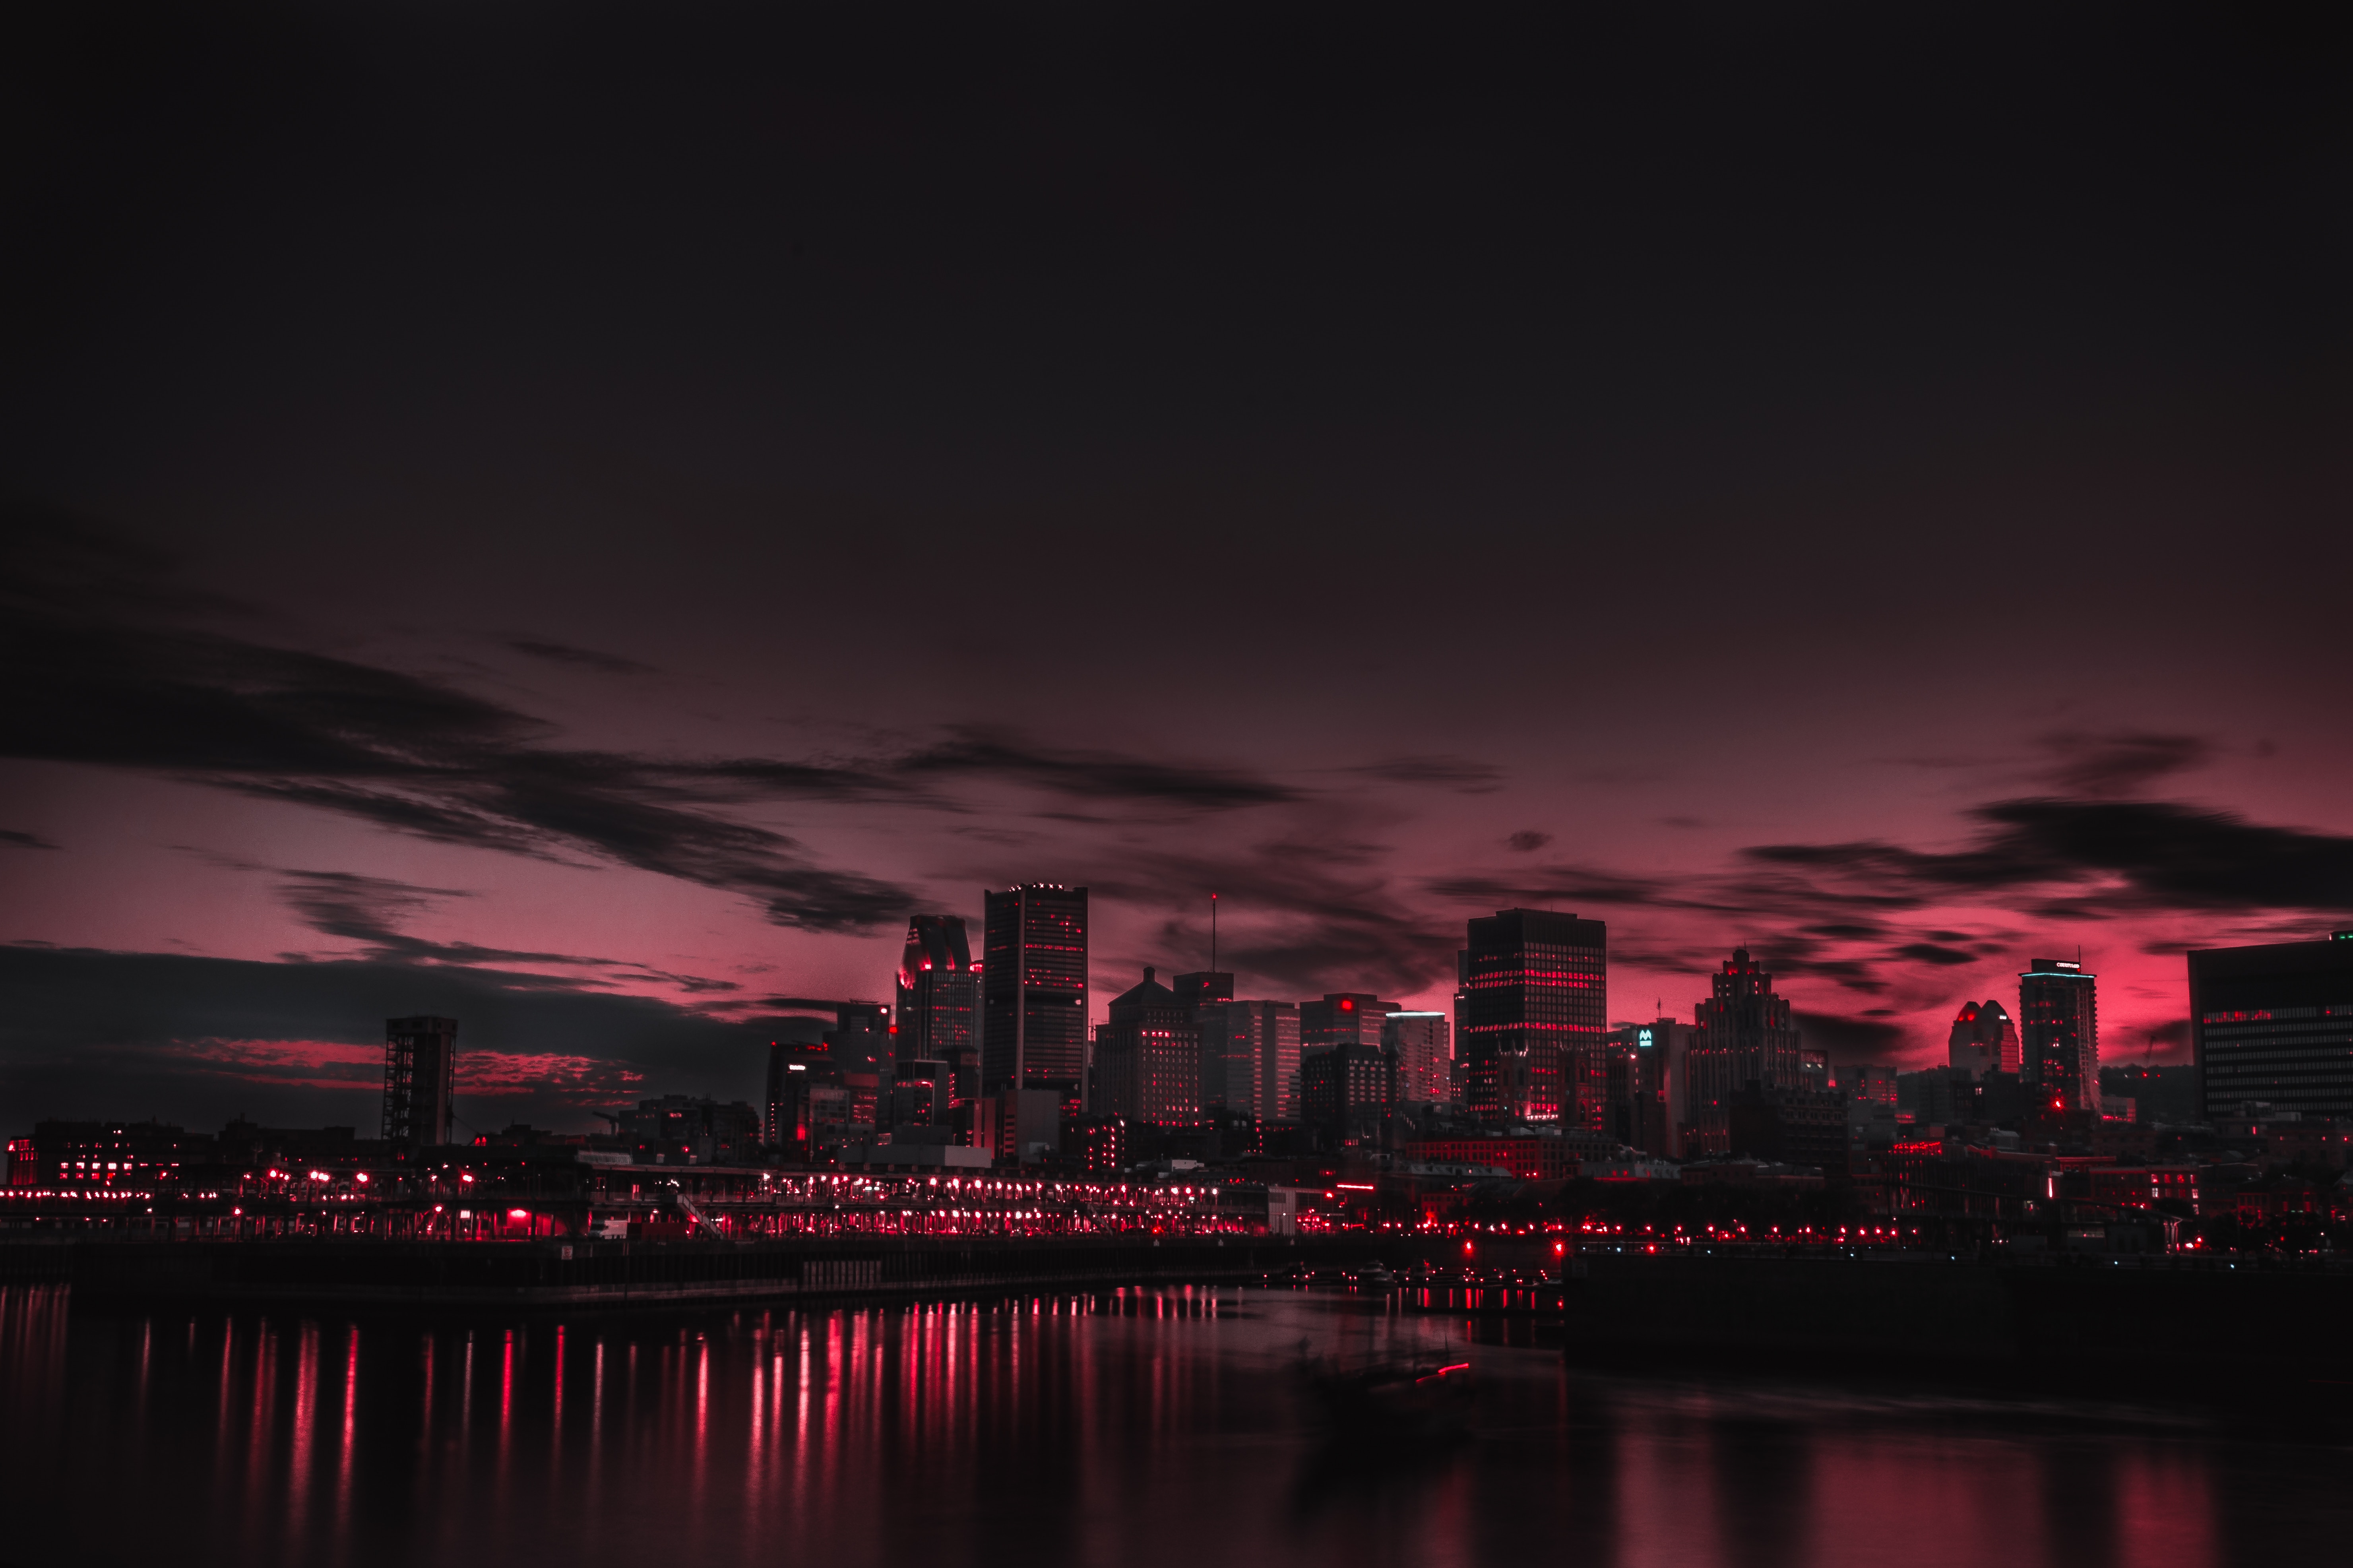 Бесплатное фото Ночной город на фоне красного неба